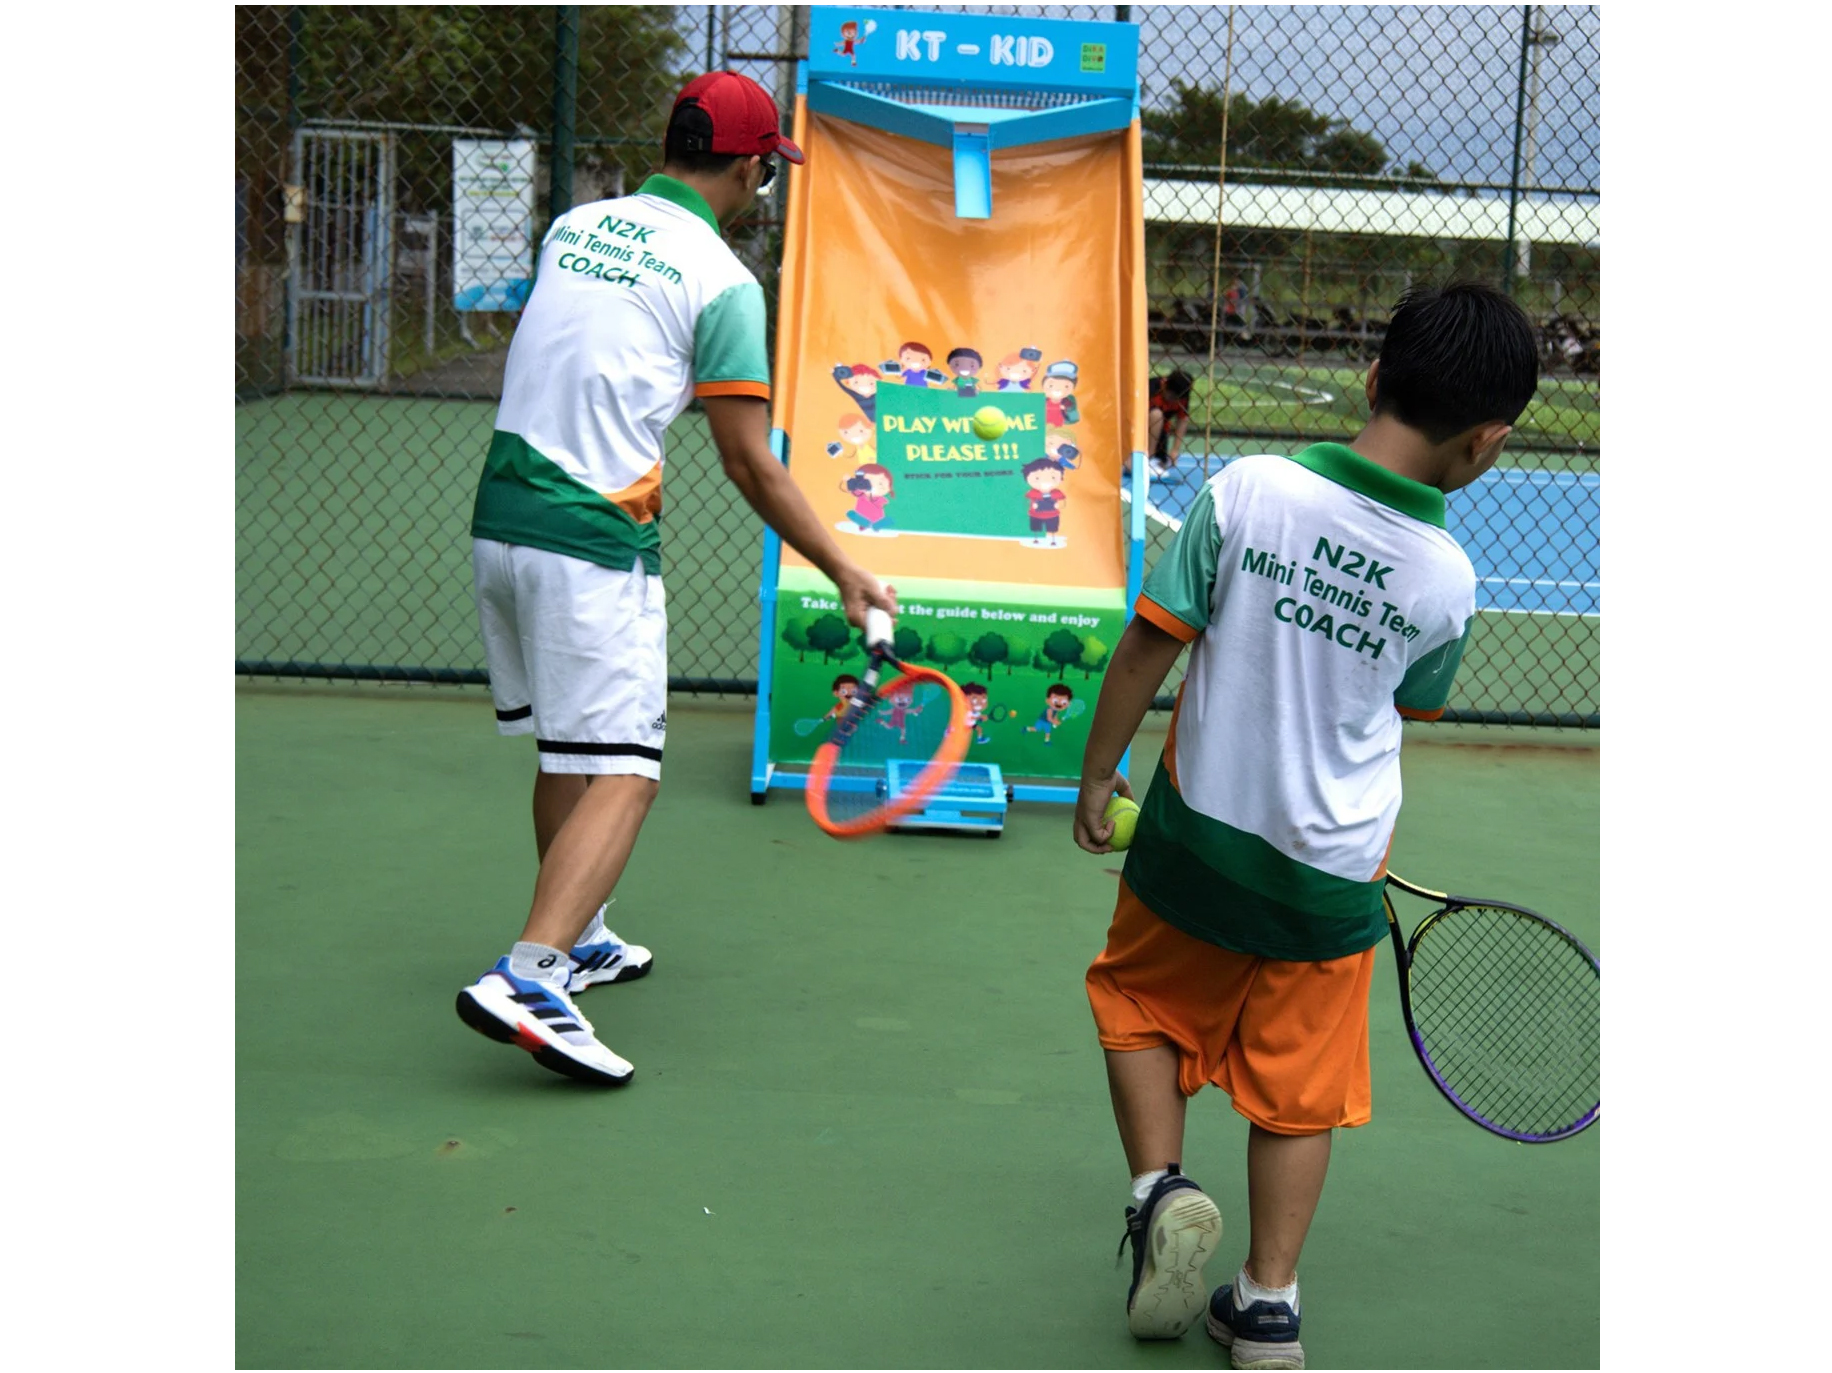 Tường tập tennis trẻ em KT-KID